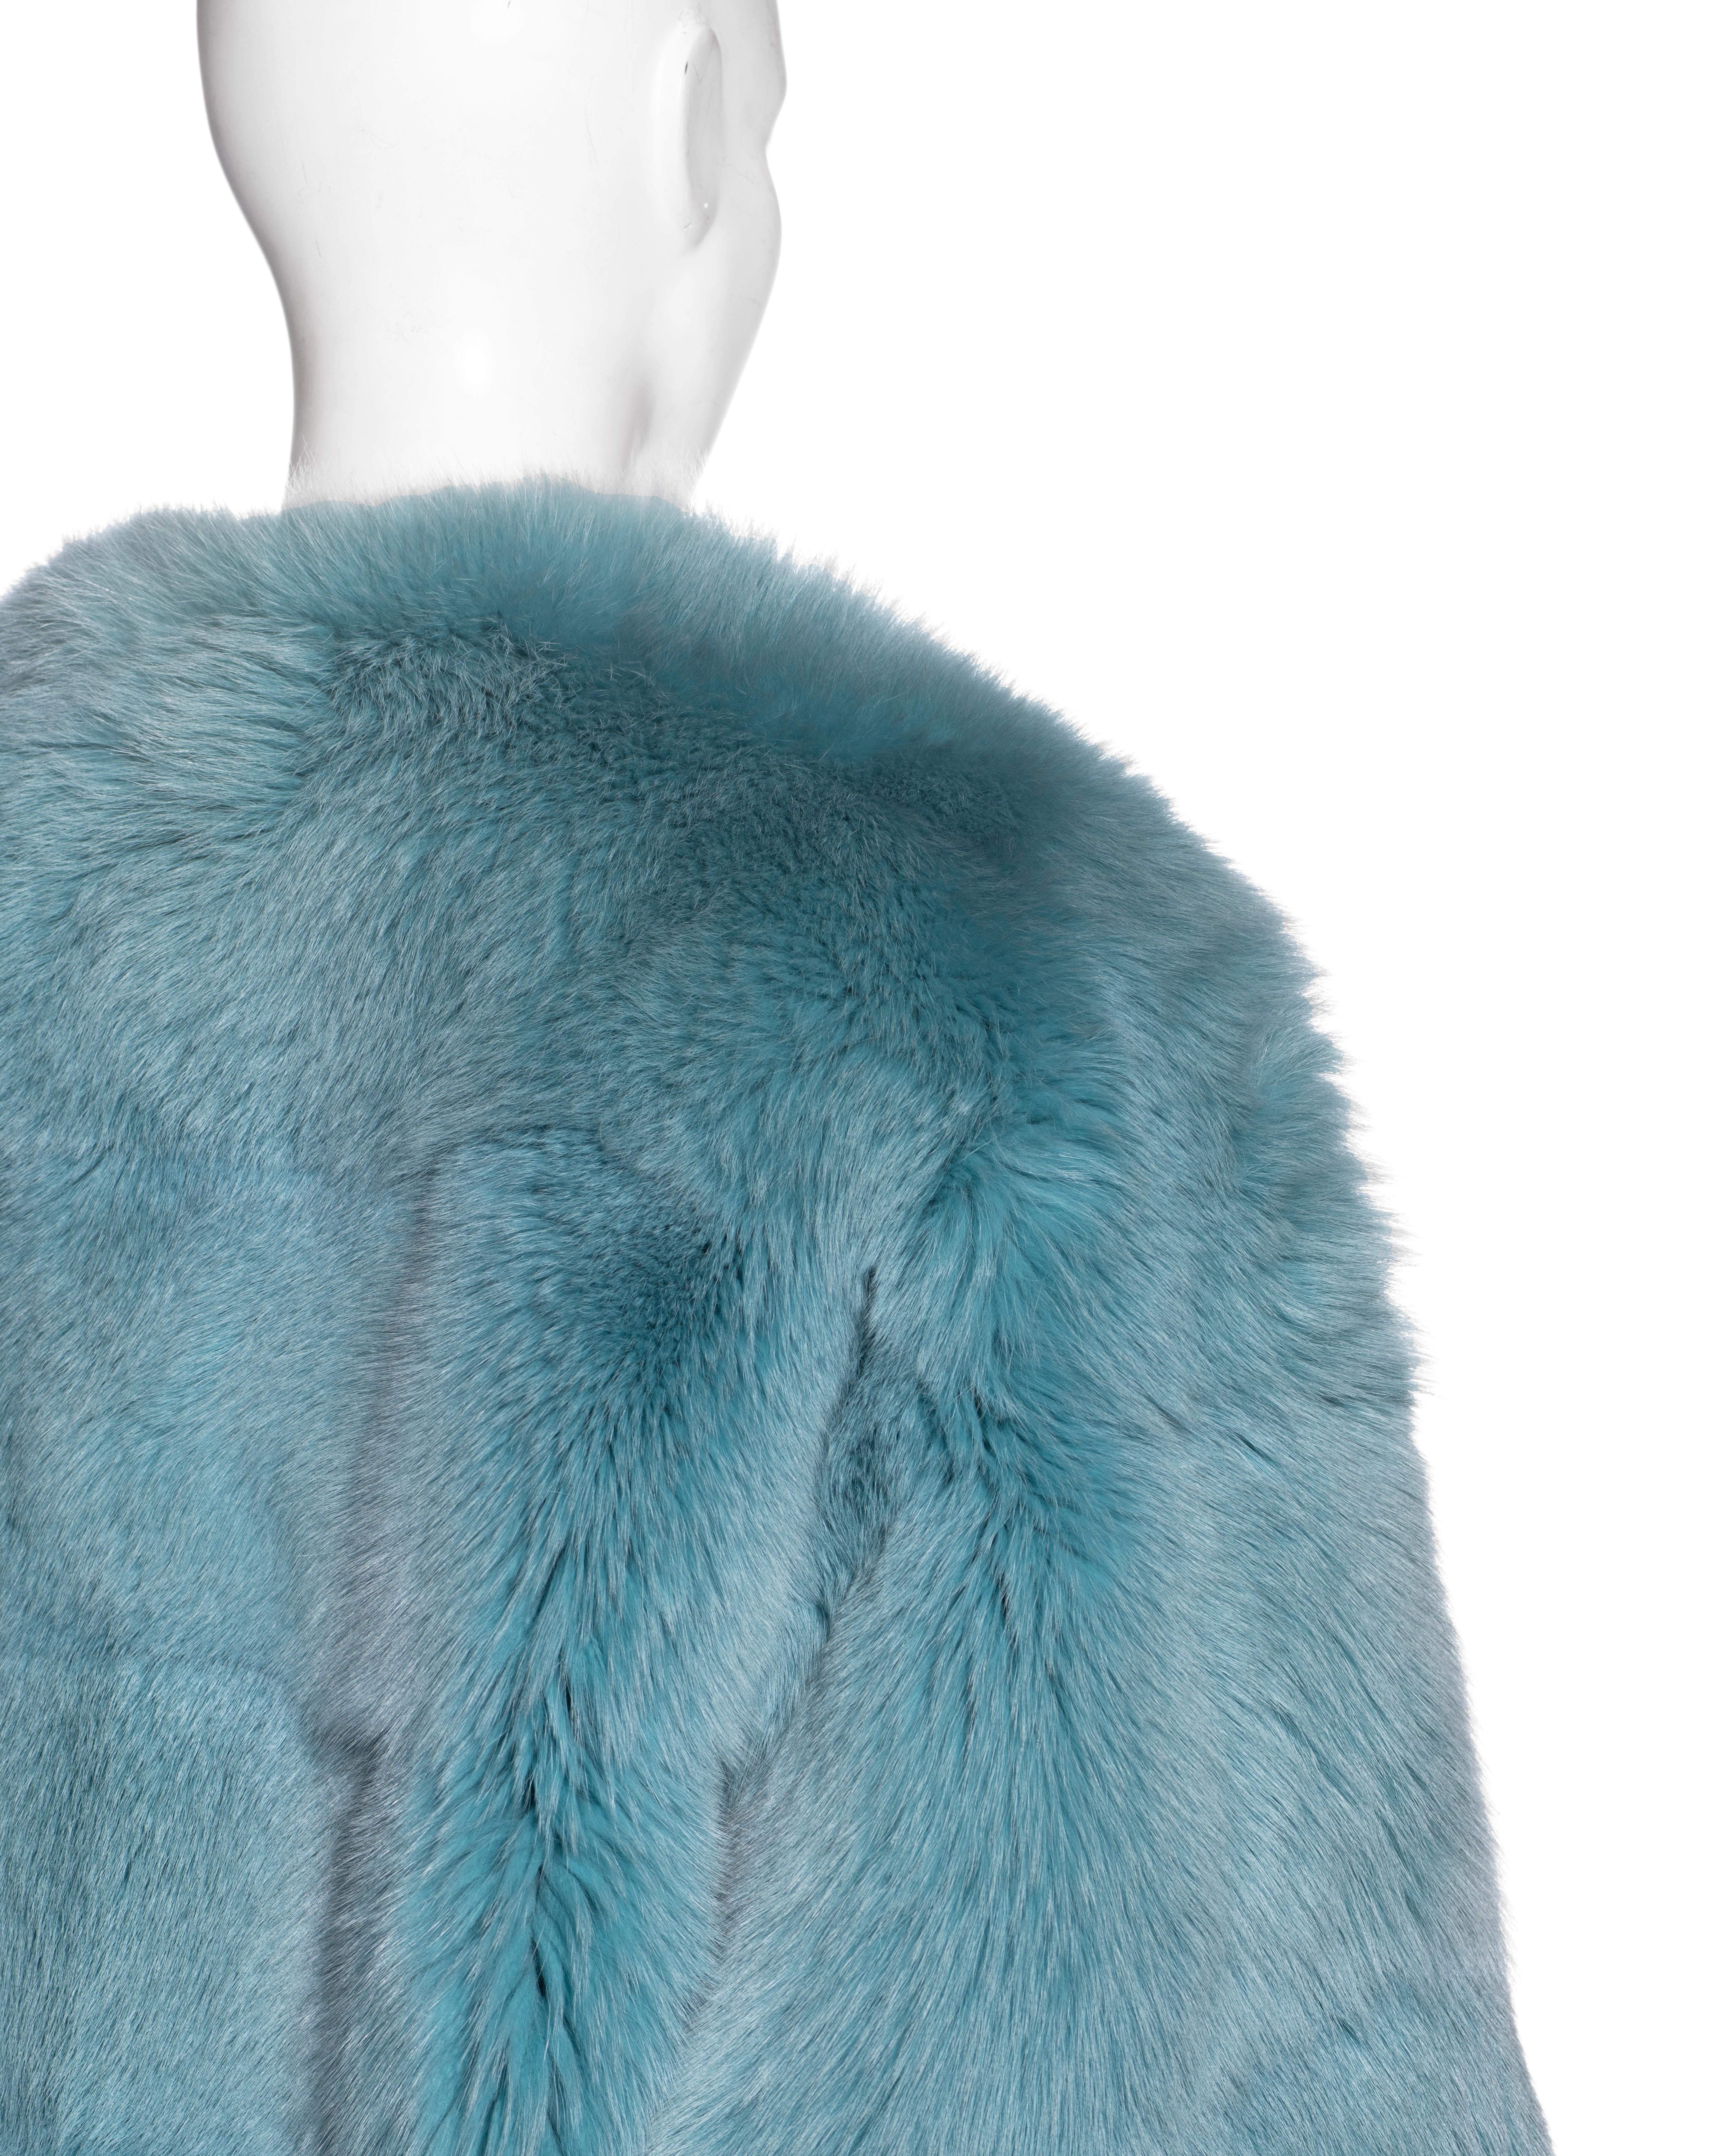 Gucci by Tom Ford aqua blue fox fur coat, fw 1997 3